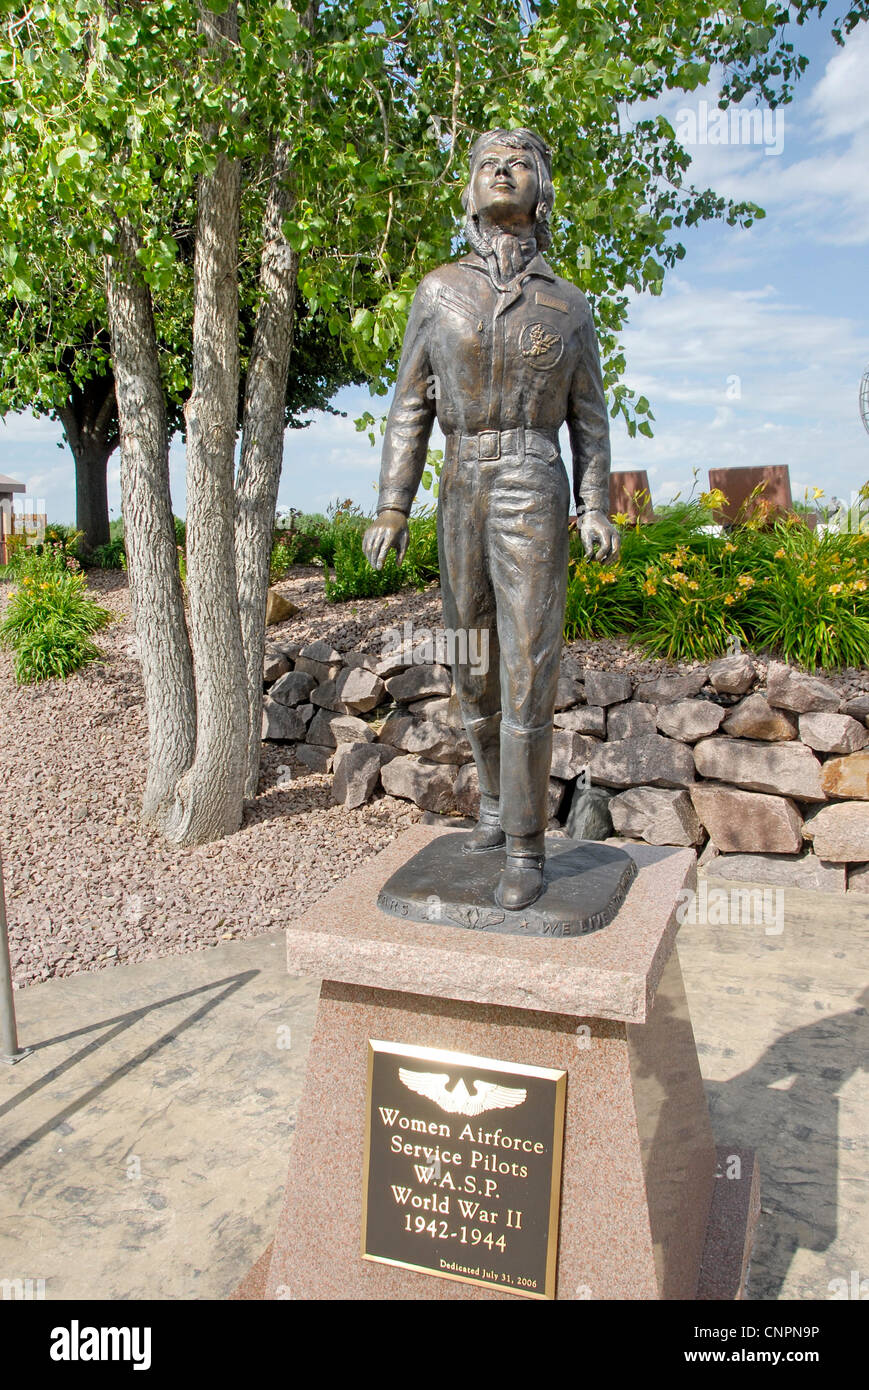 Statue of World War II W.A.S.P.s at The High Ground Wisconsin Vietnam Veterans Memorial Project in Niellsville, Wisconsin Stock Photo